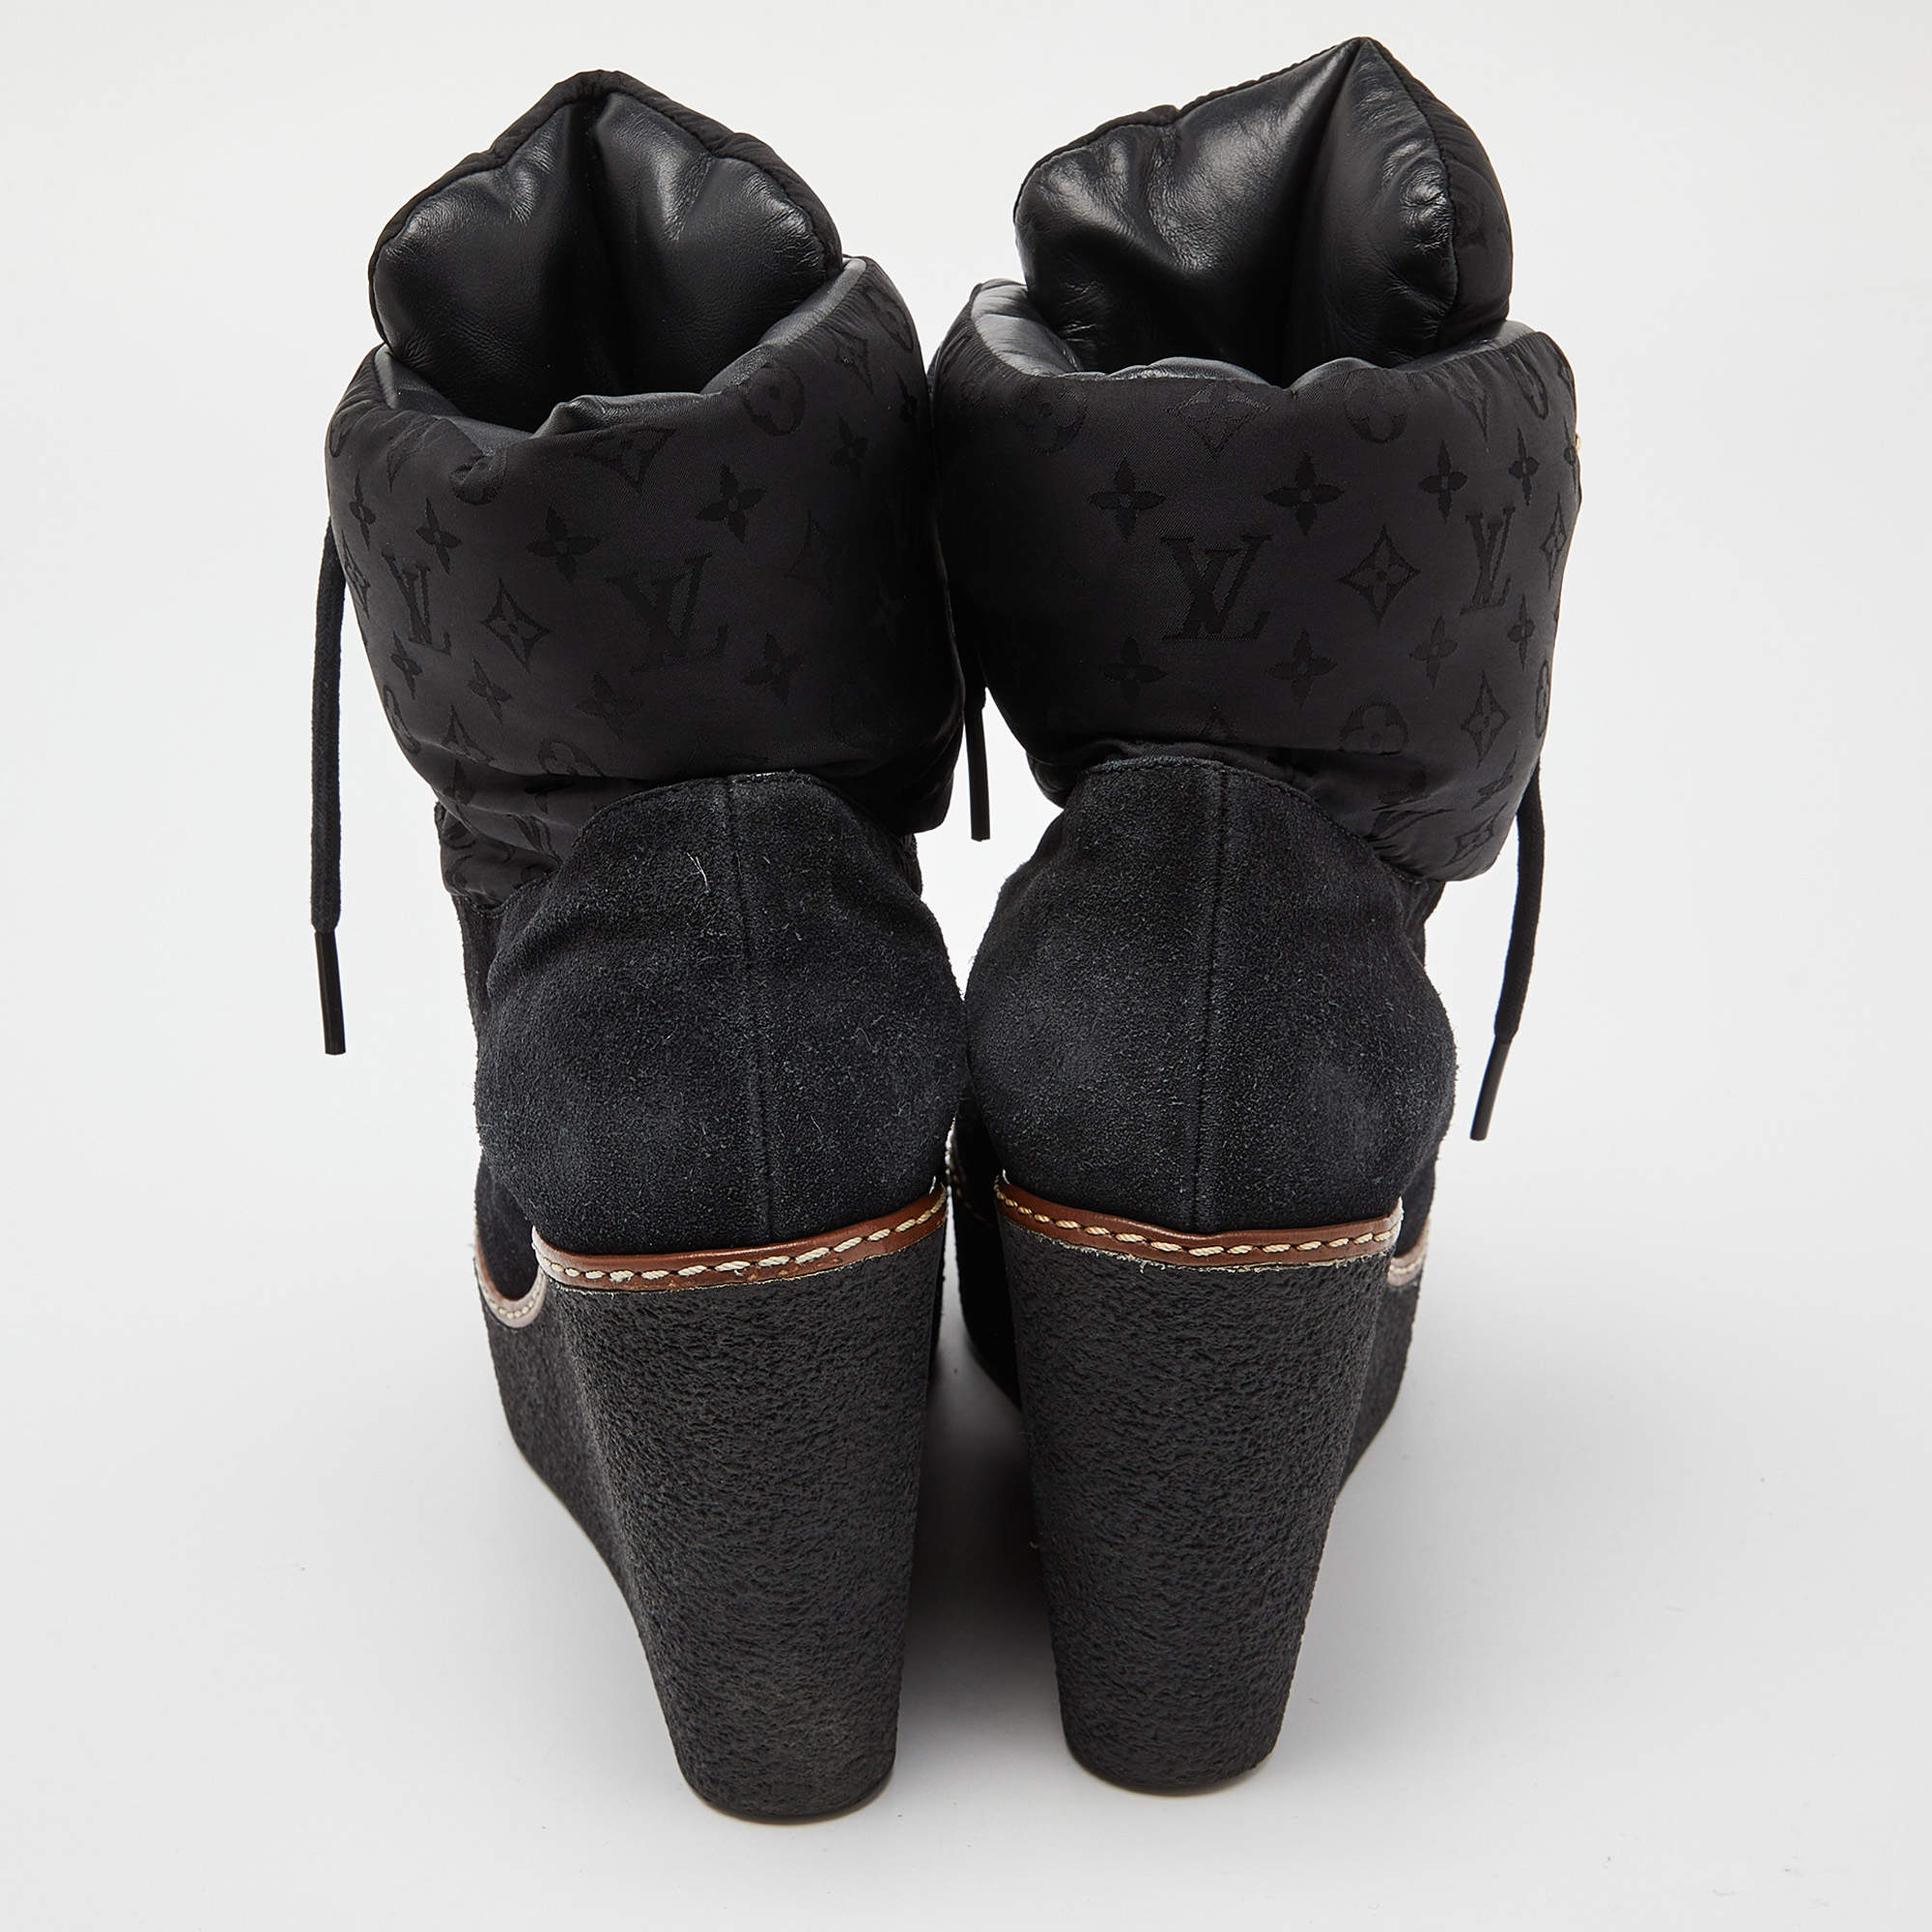 Louis Vuitton Patti Wedge Ankle Boot 9,5Cm (1A9CLA, 1A9CKV)